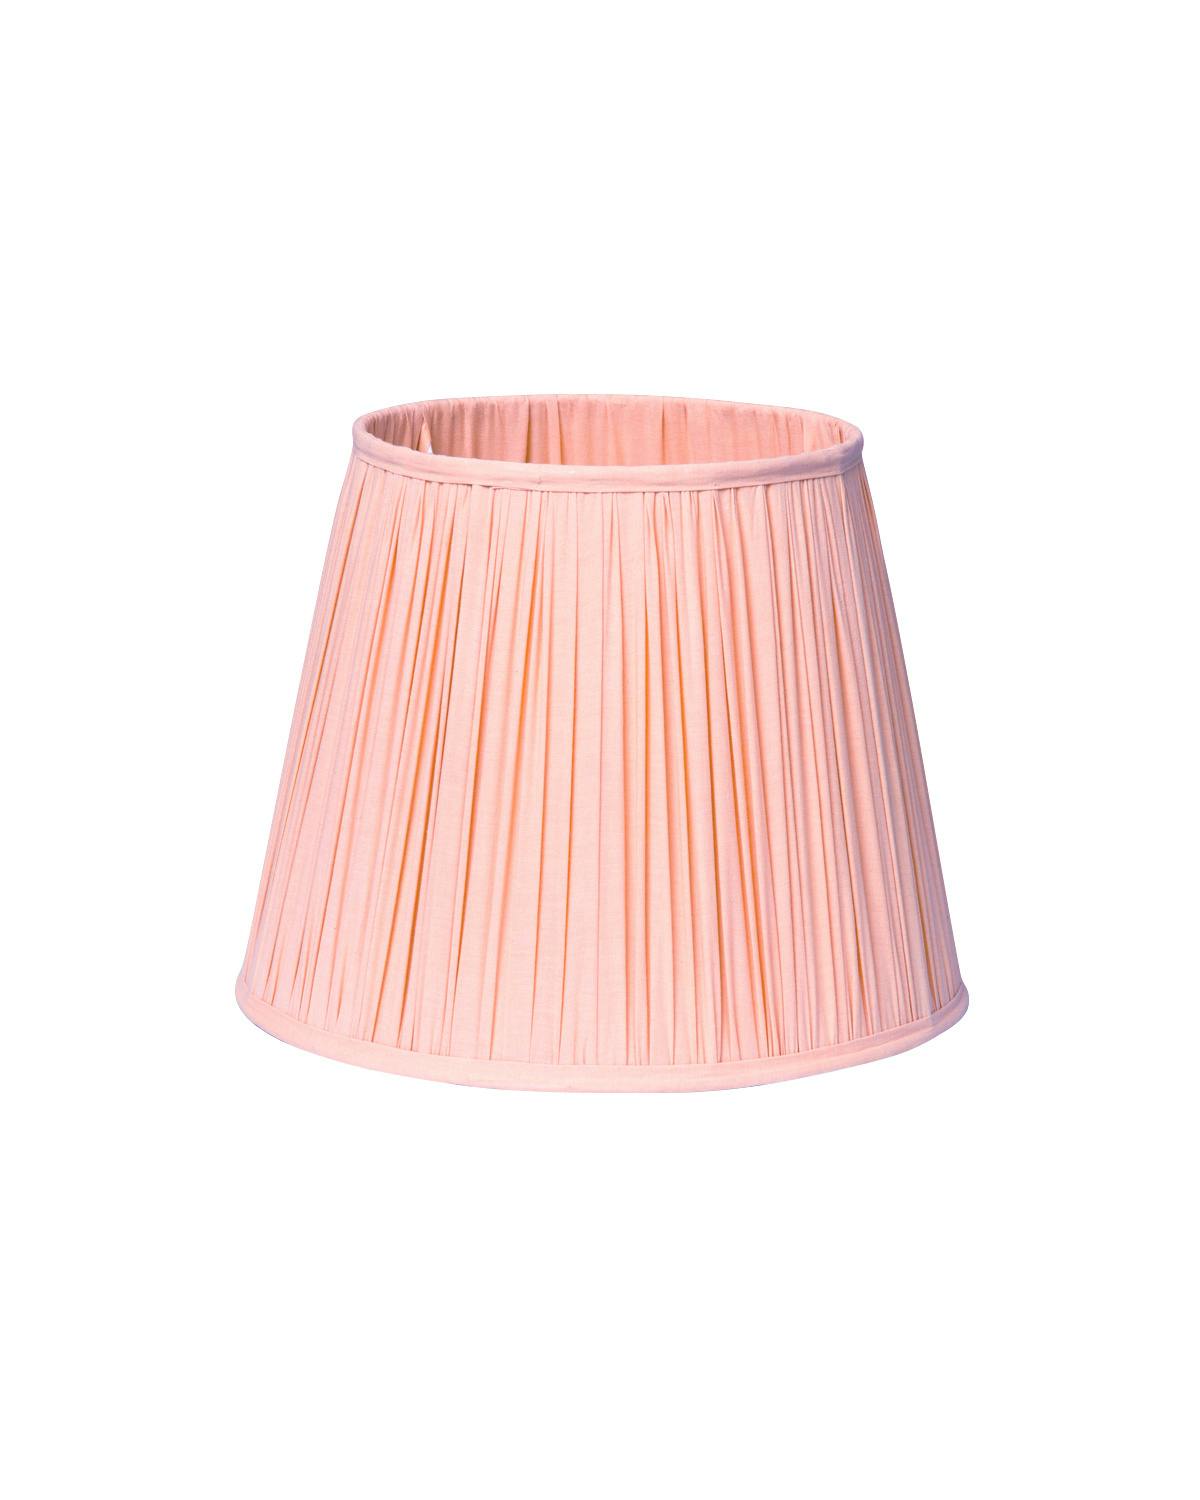 Spring Lampshade Medium, Pink. Image #1